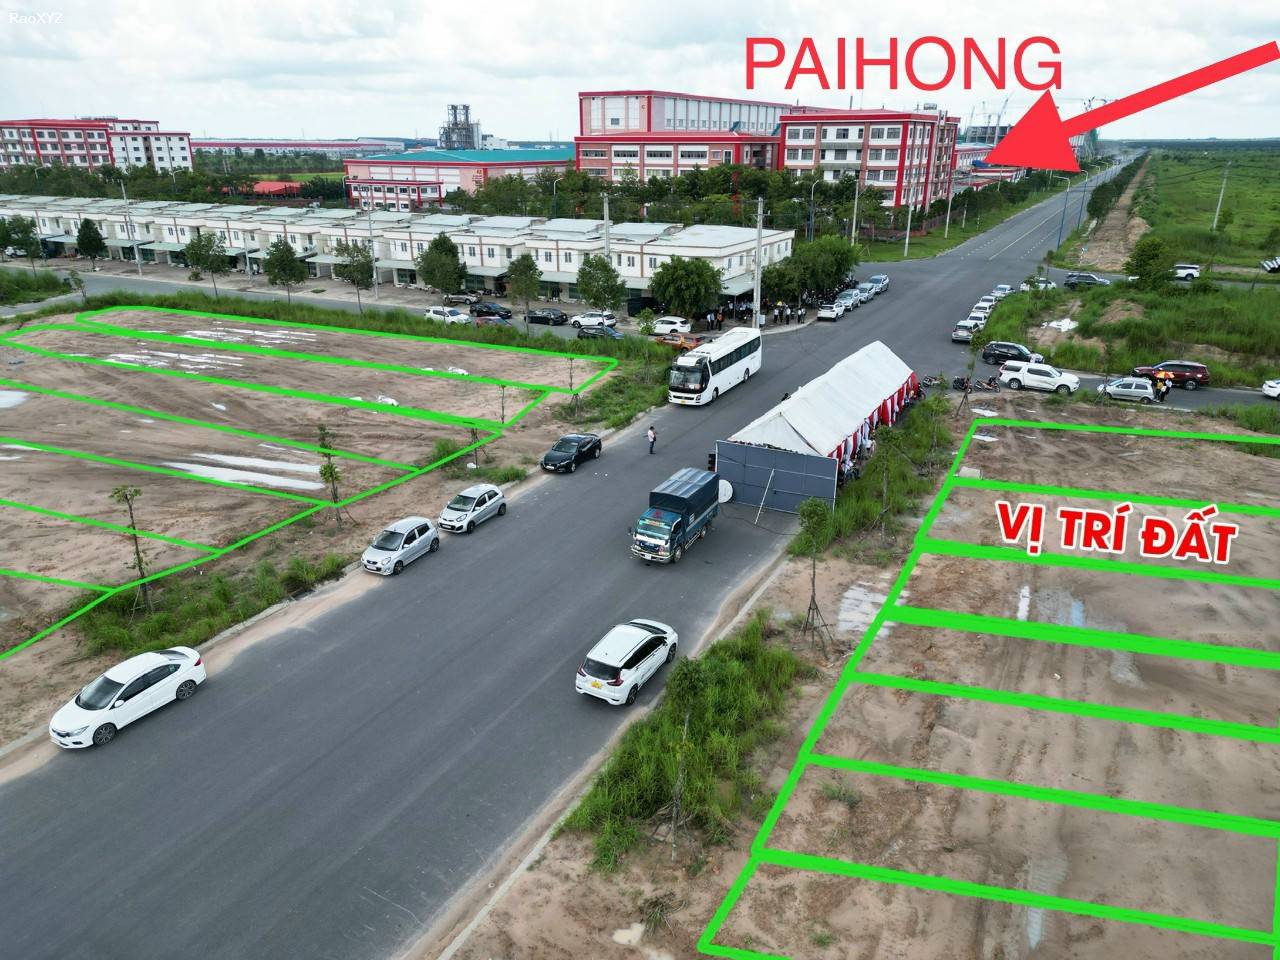 Đất nền liền kề công ty Paihong giá gốc chính chủ từ 9,2 triệu/m2